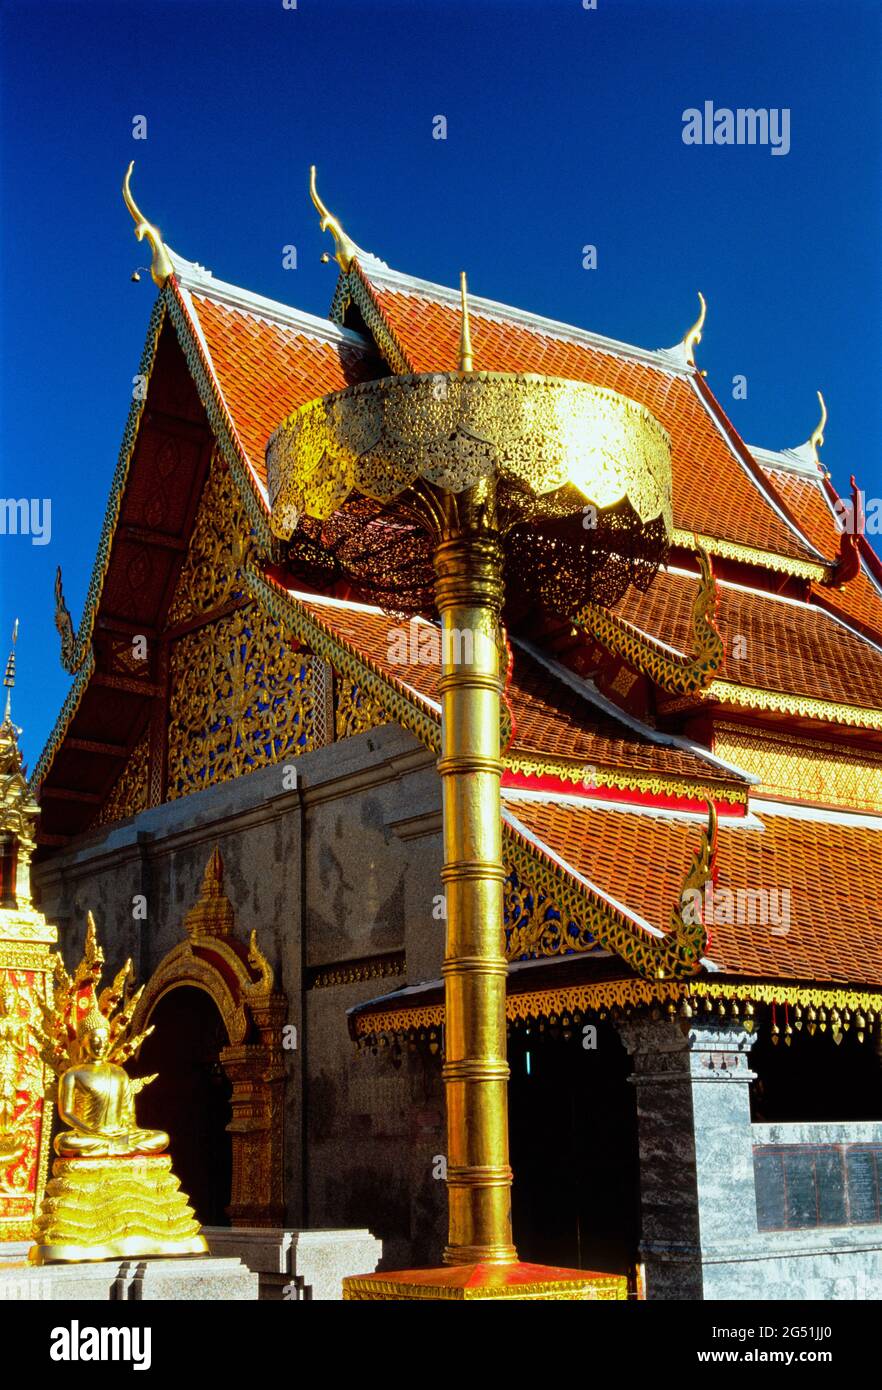 Sculpture dorée à l'extérieur du temple Wat Phra That Doi Suthep, province de Chiang Mai, Thaïlande Banque D'Images